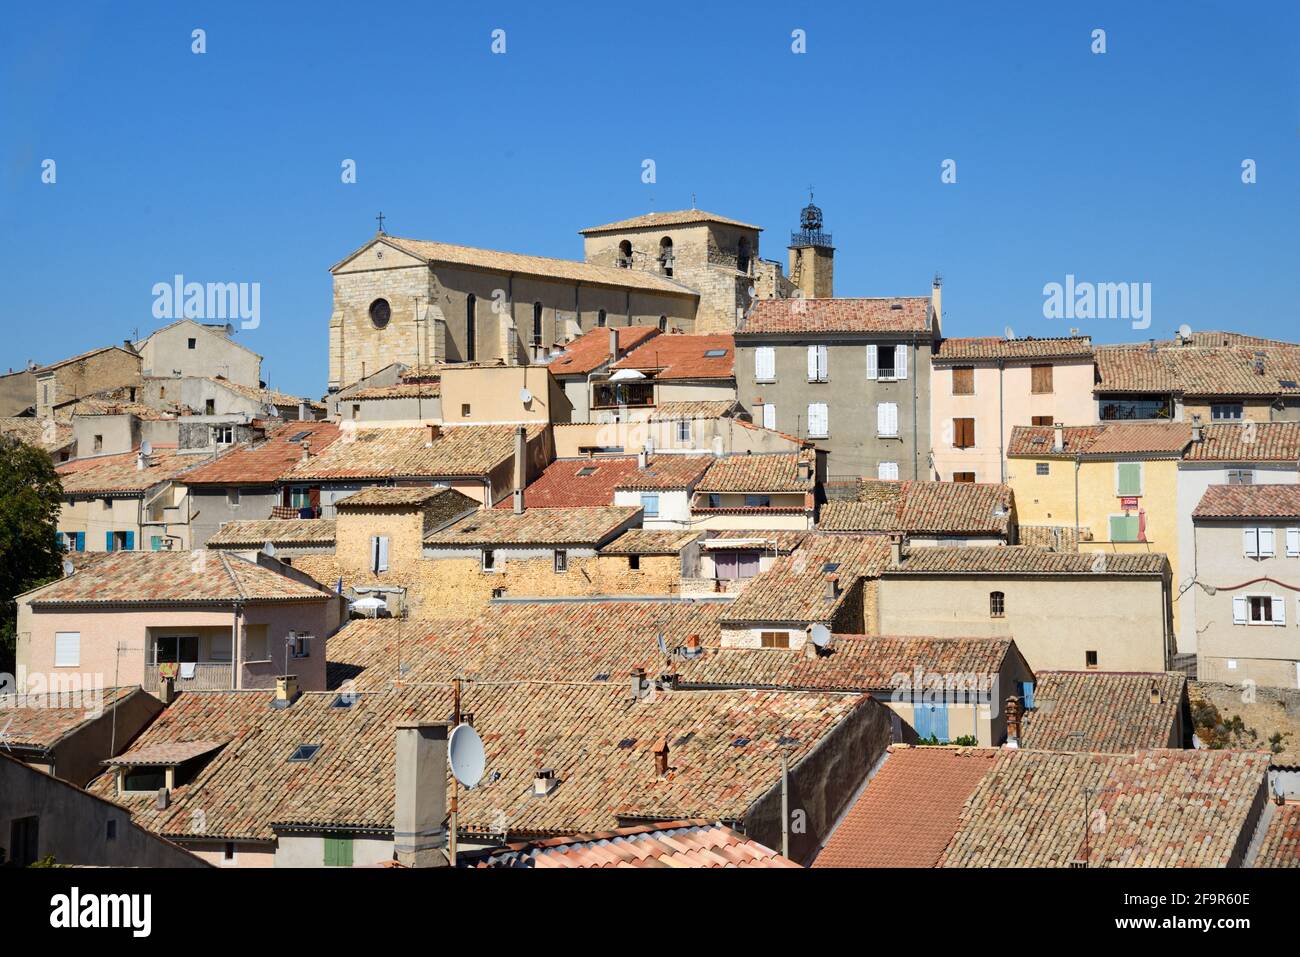 Blick über die Dächer des Dorfes, die Terrakotta-Dächer, die Kirche, die Altstadt und das historische Viertel von Valensole Alpes-de-Haute-Provence Provence Frankreich Stockfoto